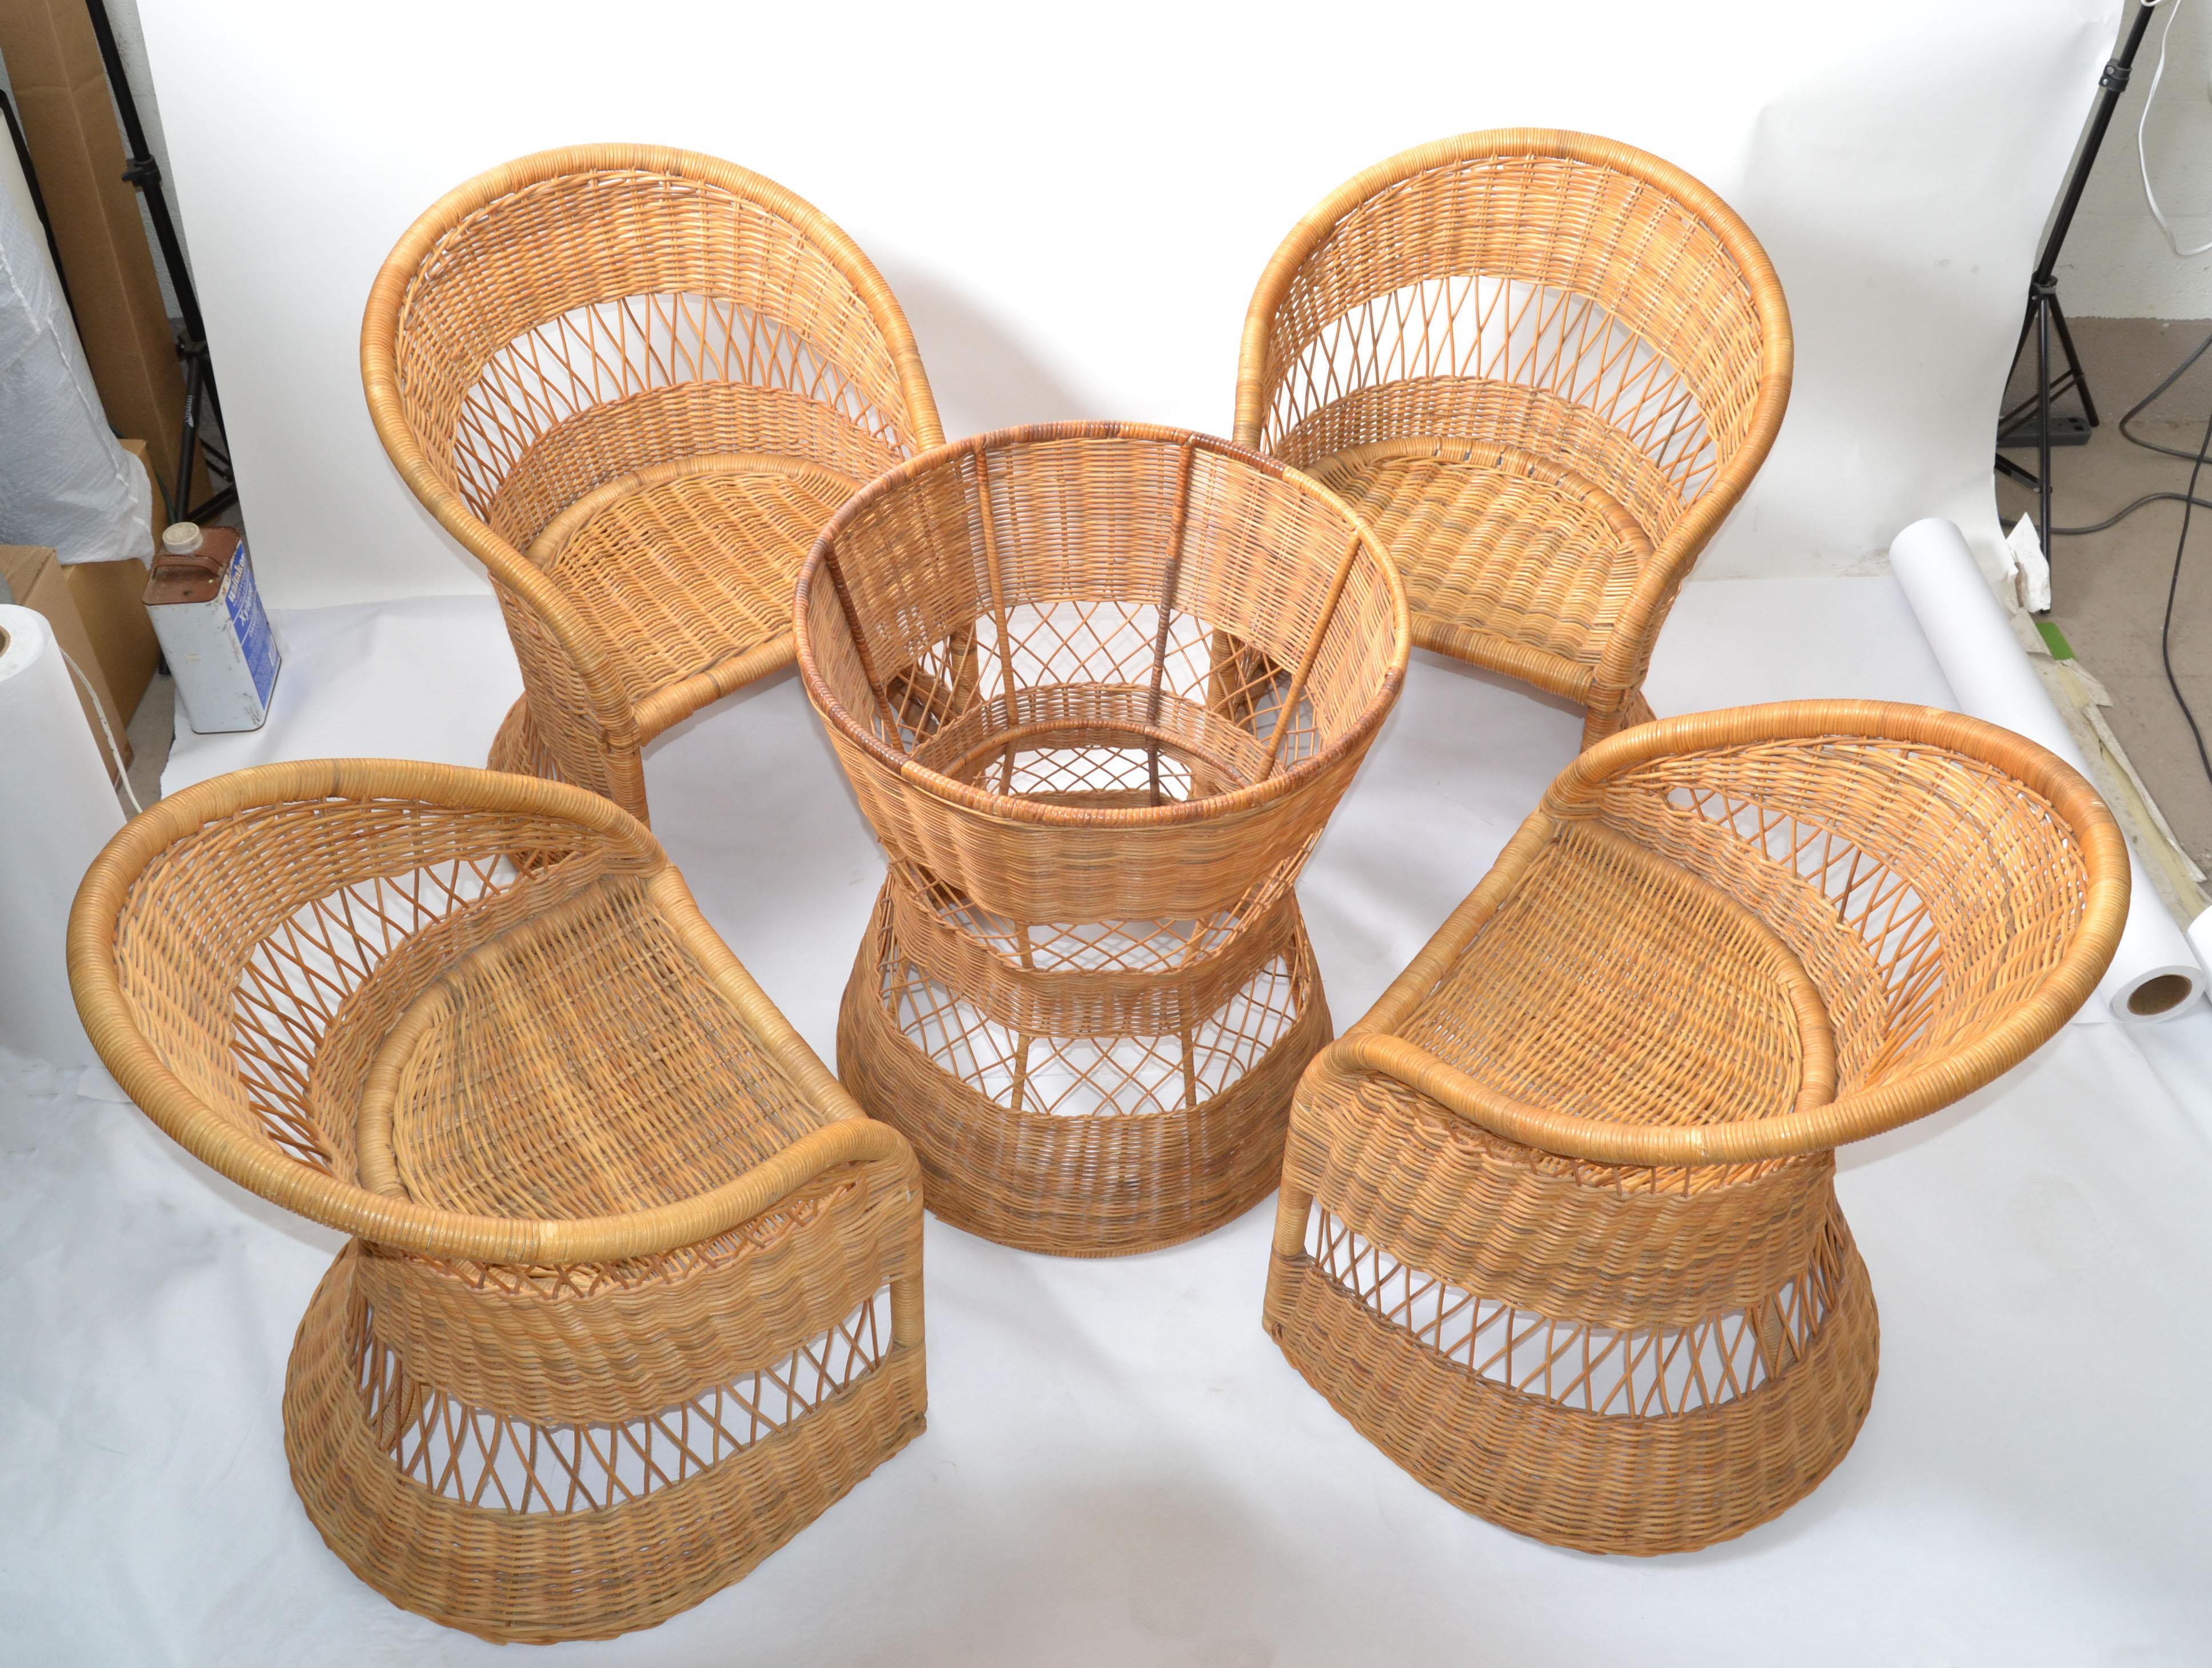 Esszimmer Set aus 4 Esszimmerstühlen im böhmischen Stil und rundem Esstisch ohne Glasplatte.
Moderne, handgefertigte Esszimmerstühle aus Bambus, Schilfrohr und Reed.
Die Stühle sind sehr bequem, stabil und leicht zu verstauen.
Messen Sie die